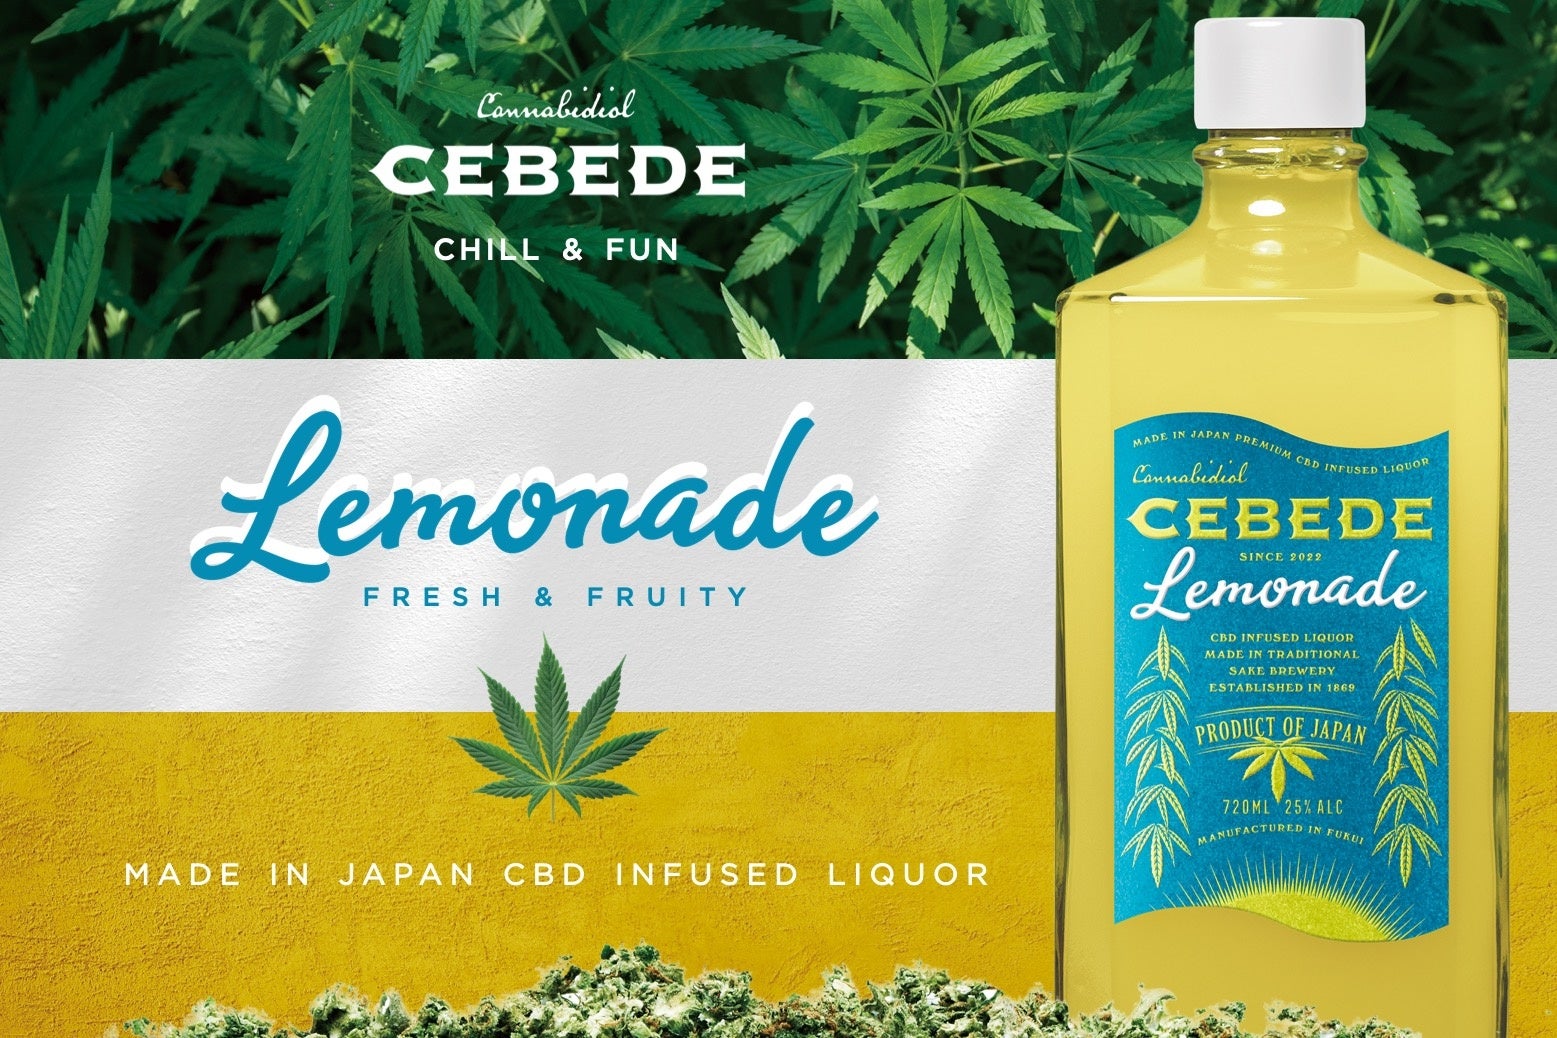 大麻から抽出される合法成分CBDを配合した日本初国産リキュールブランド「セベデ」から新フレーバー「セベデレモネード」発売